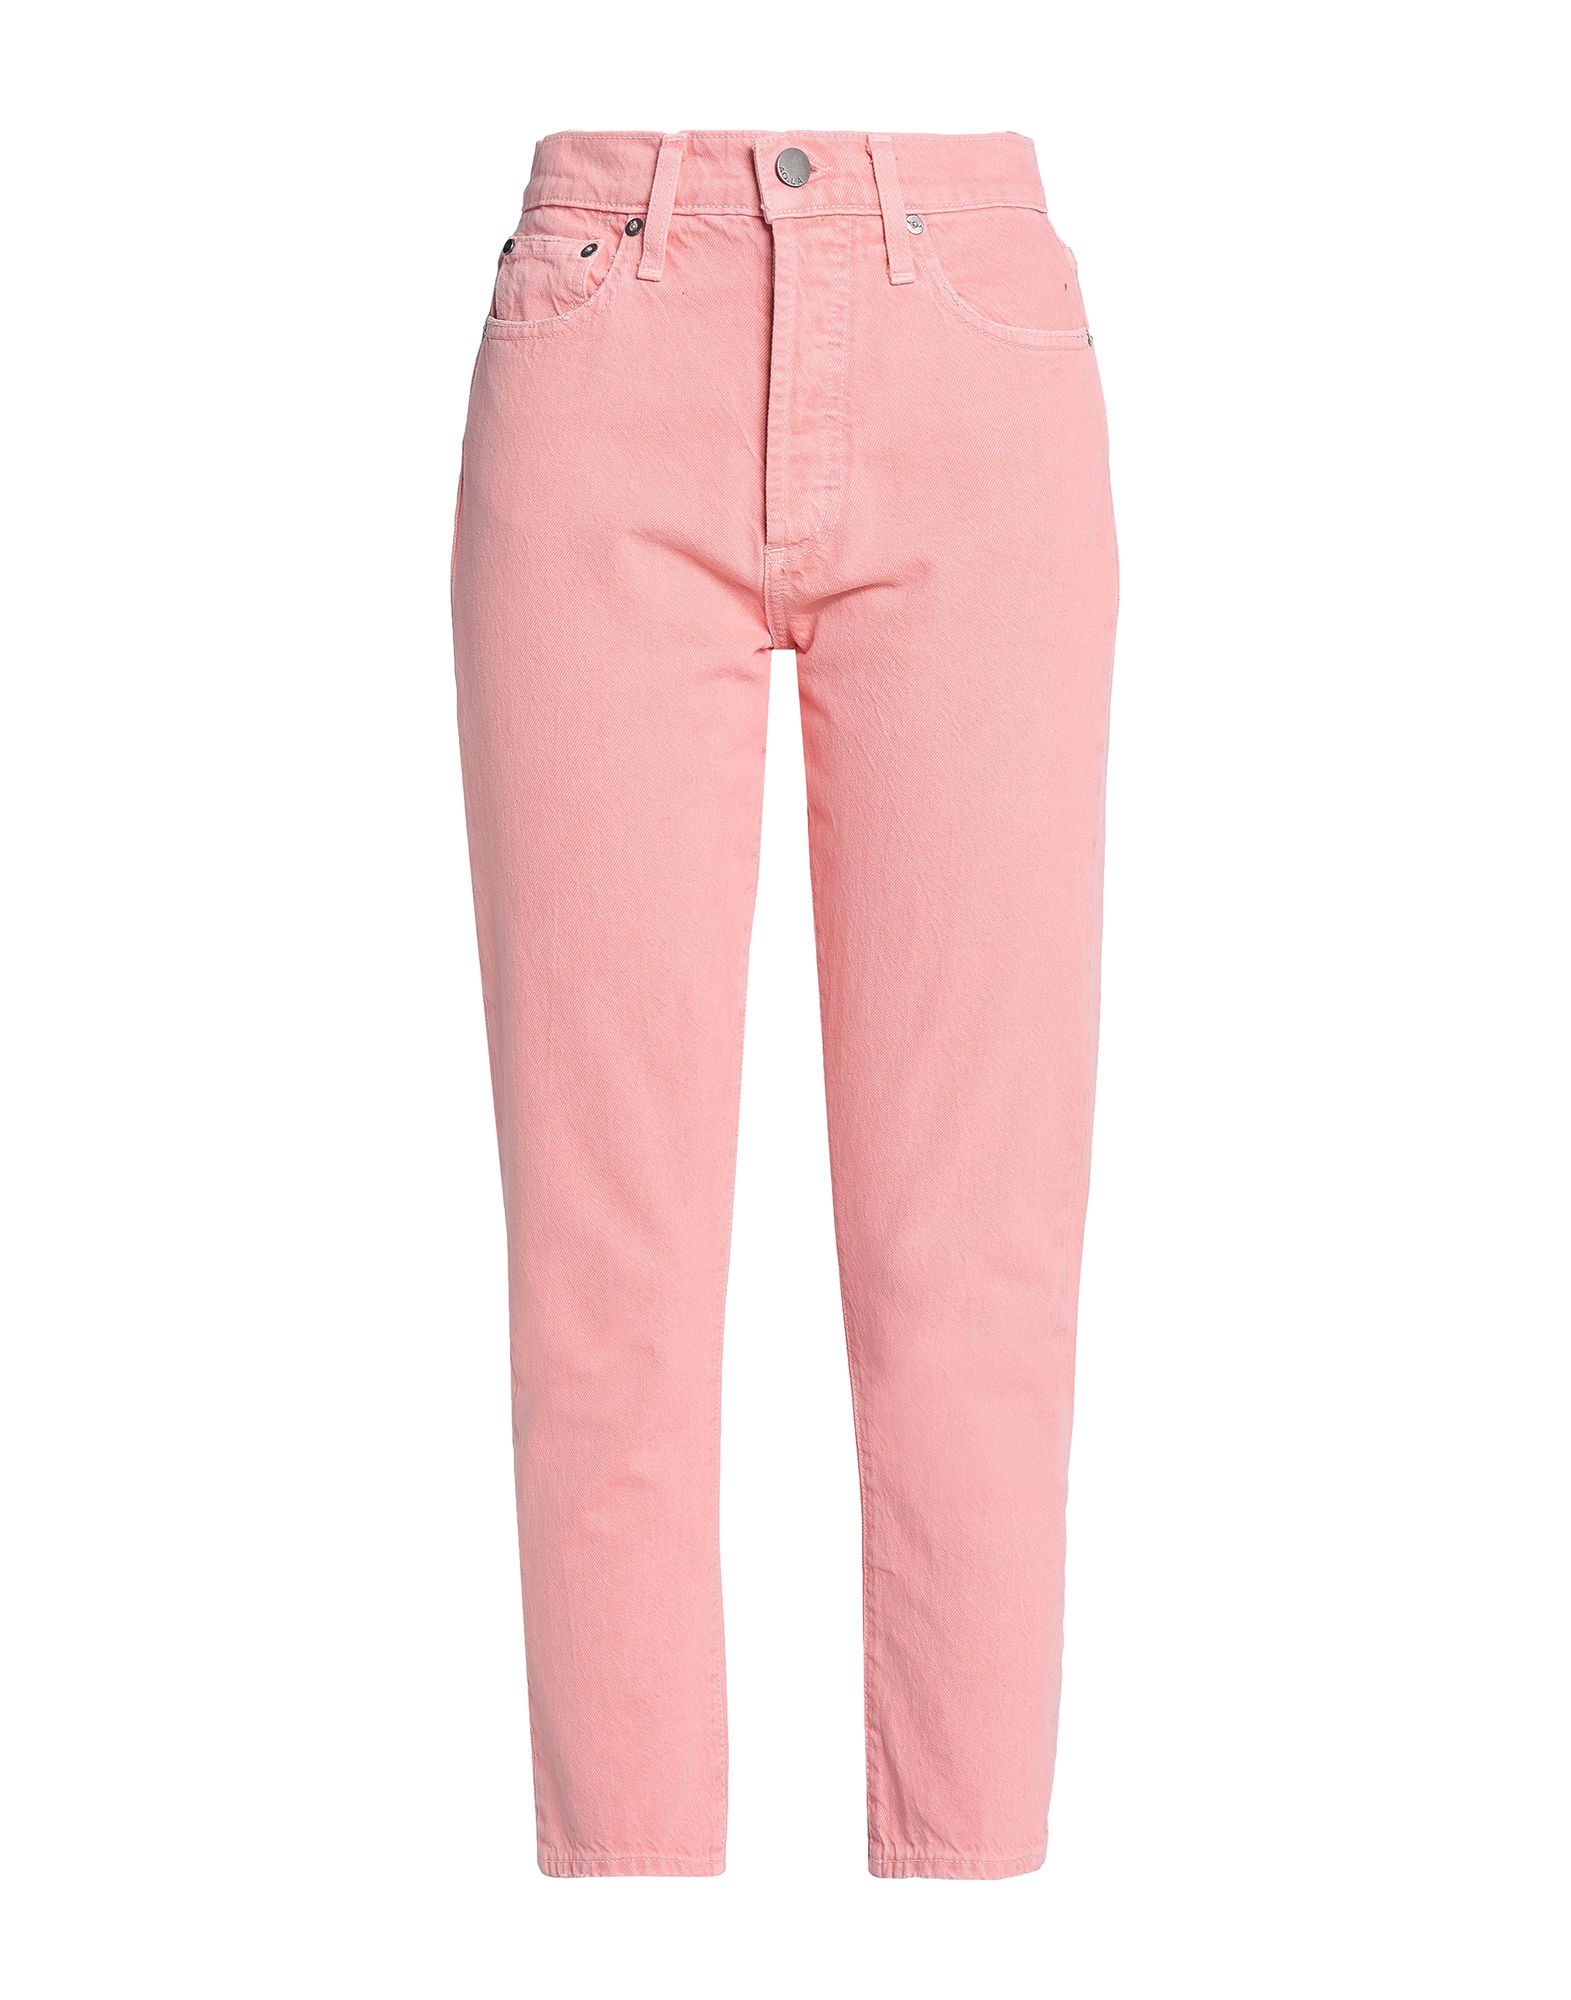 Розовые джинсы